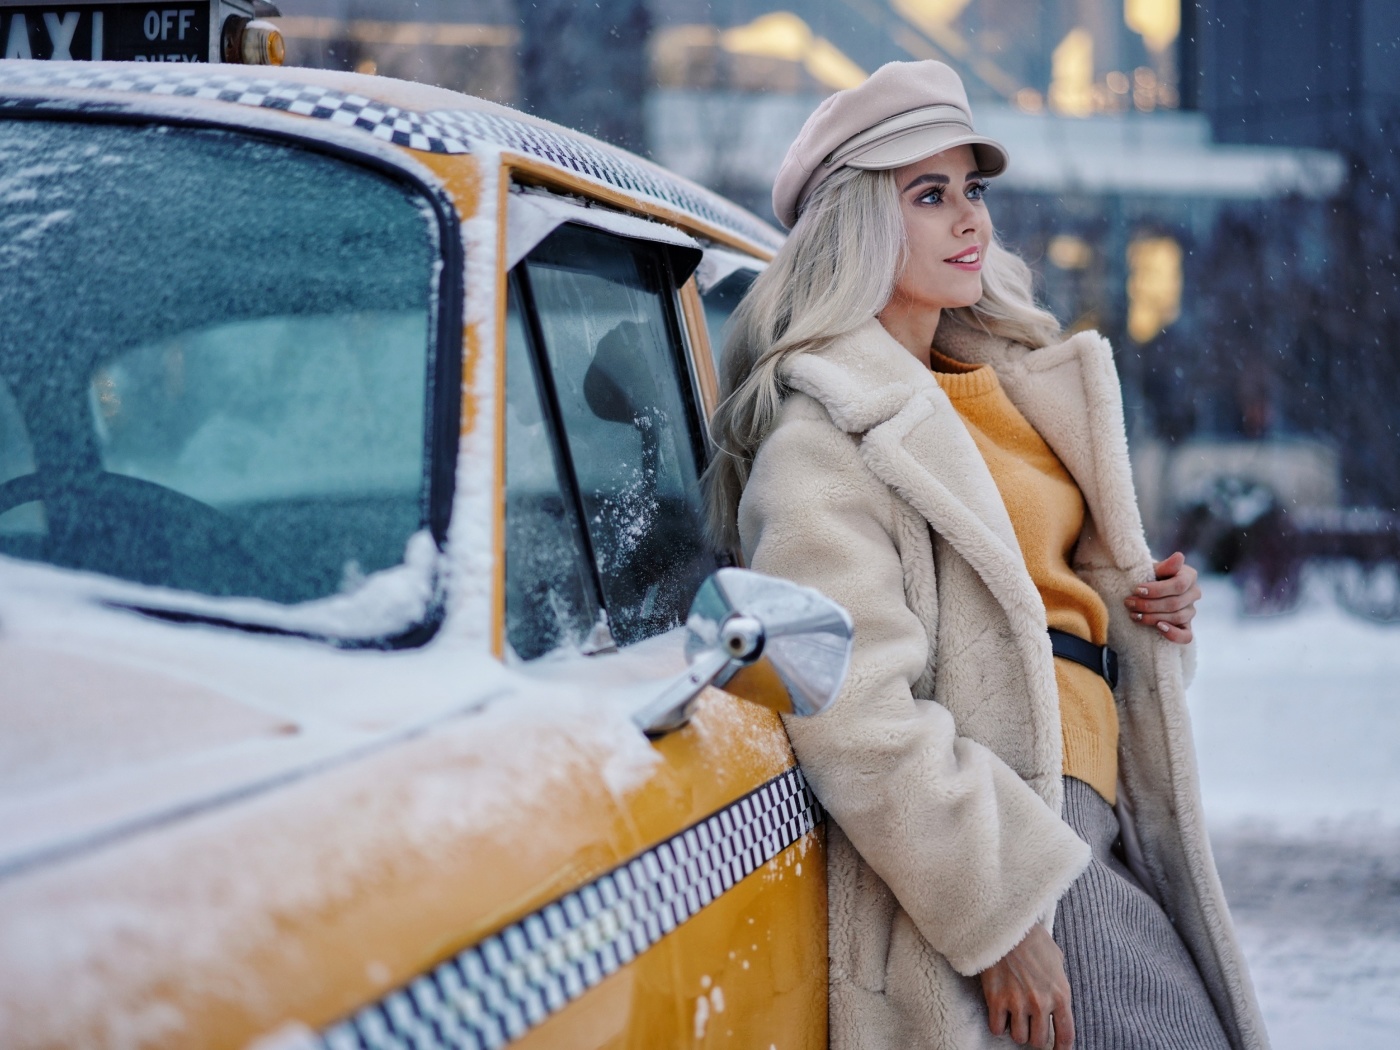 Обои Winter Girl and Taxi 1400x1050